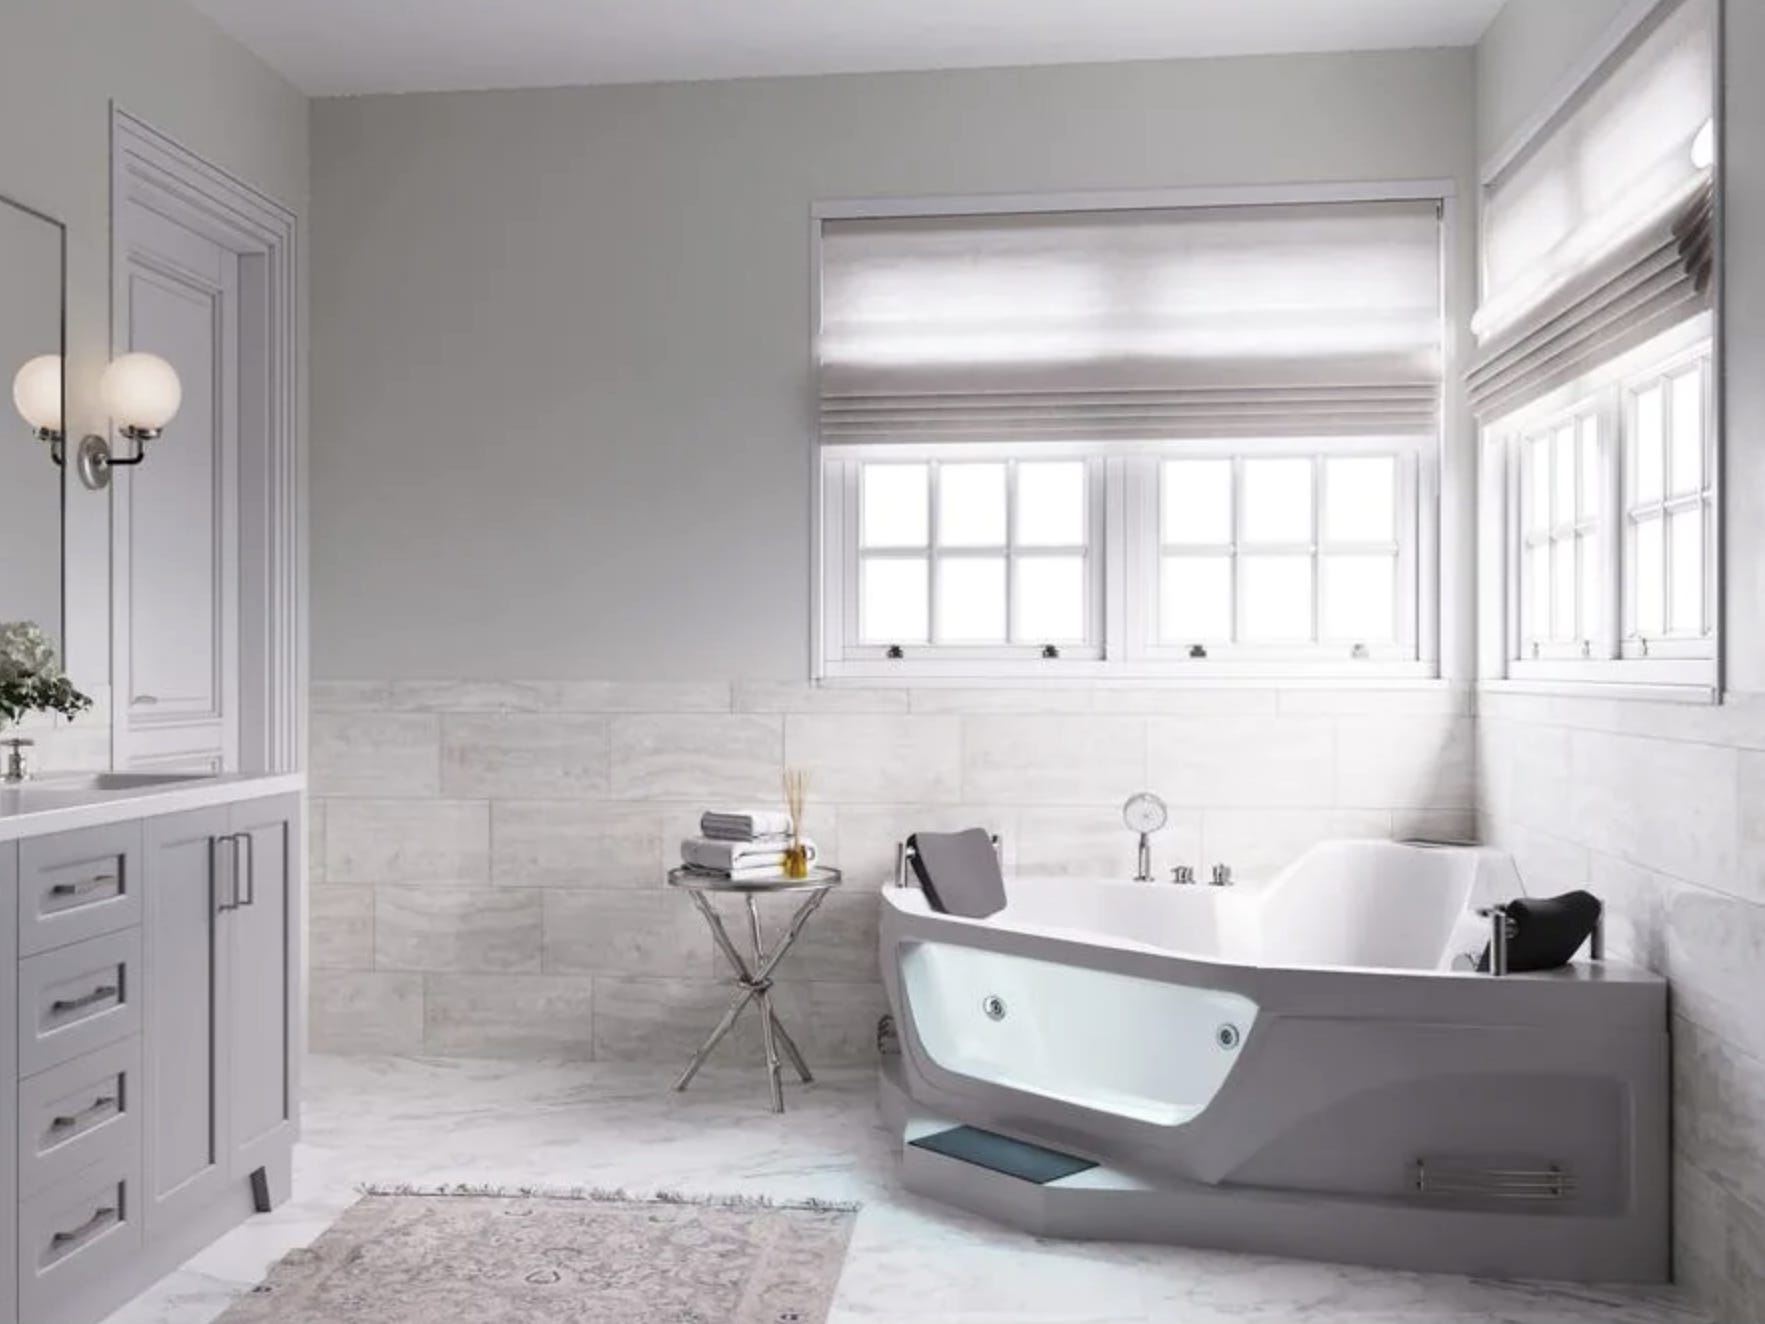 Die Ariel Eck-Whirlpool-Badewanne mit rechtem Abfluss, eine der besten Eckbadewannen im Jahr 2023, in einem weiß gefliesten Badezimmer mit Fenstern darüber.